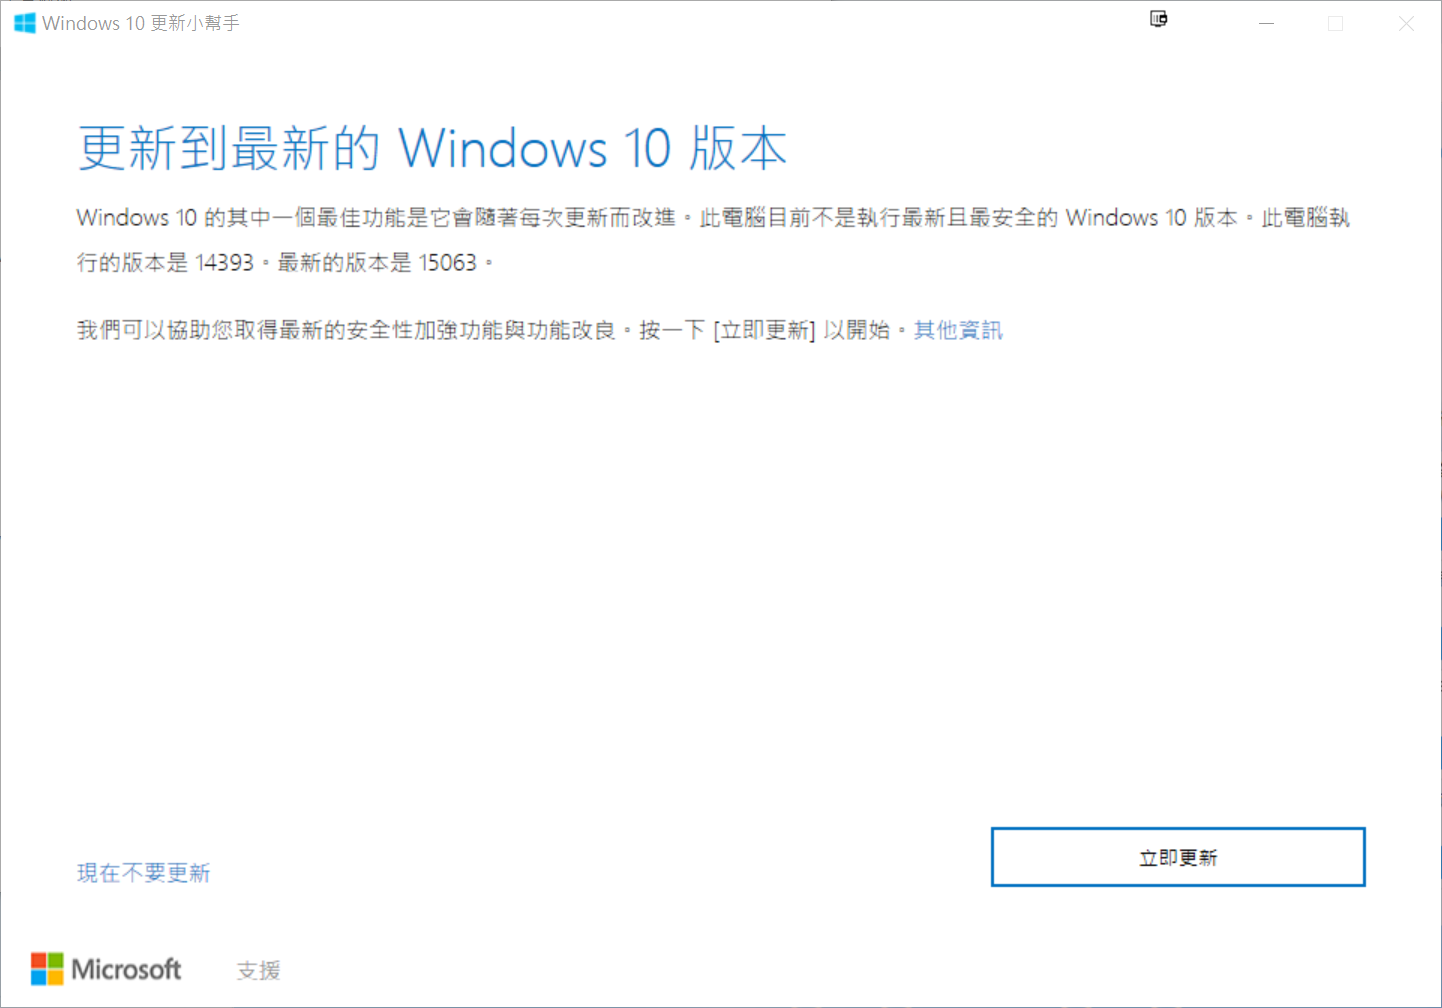 馬上免費升級 Windows 10 Creators Update (build 15063) 大更新 @3C 達人廖阿輝